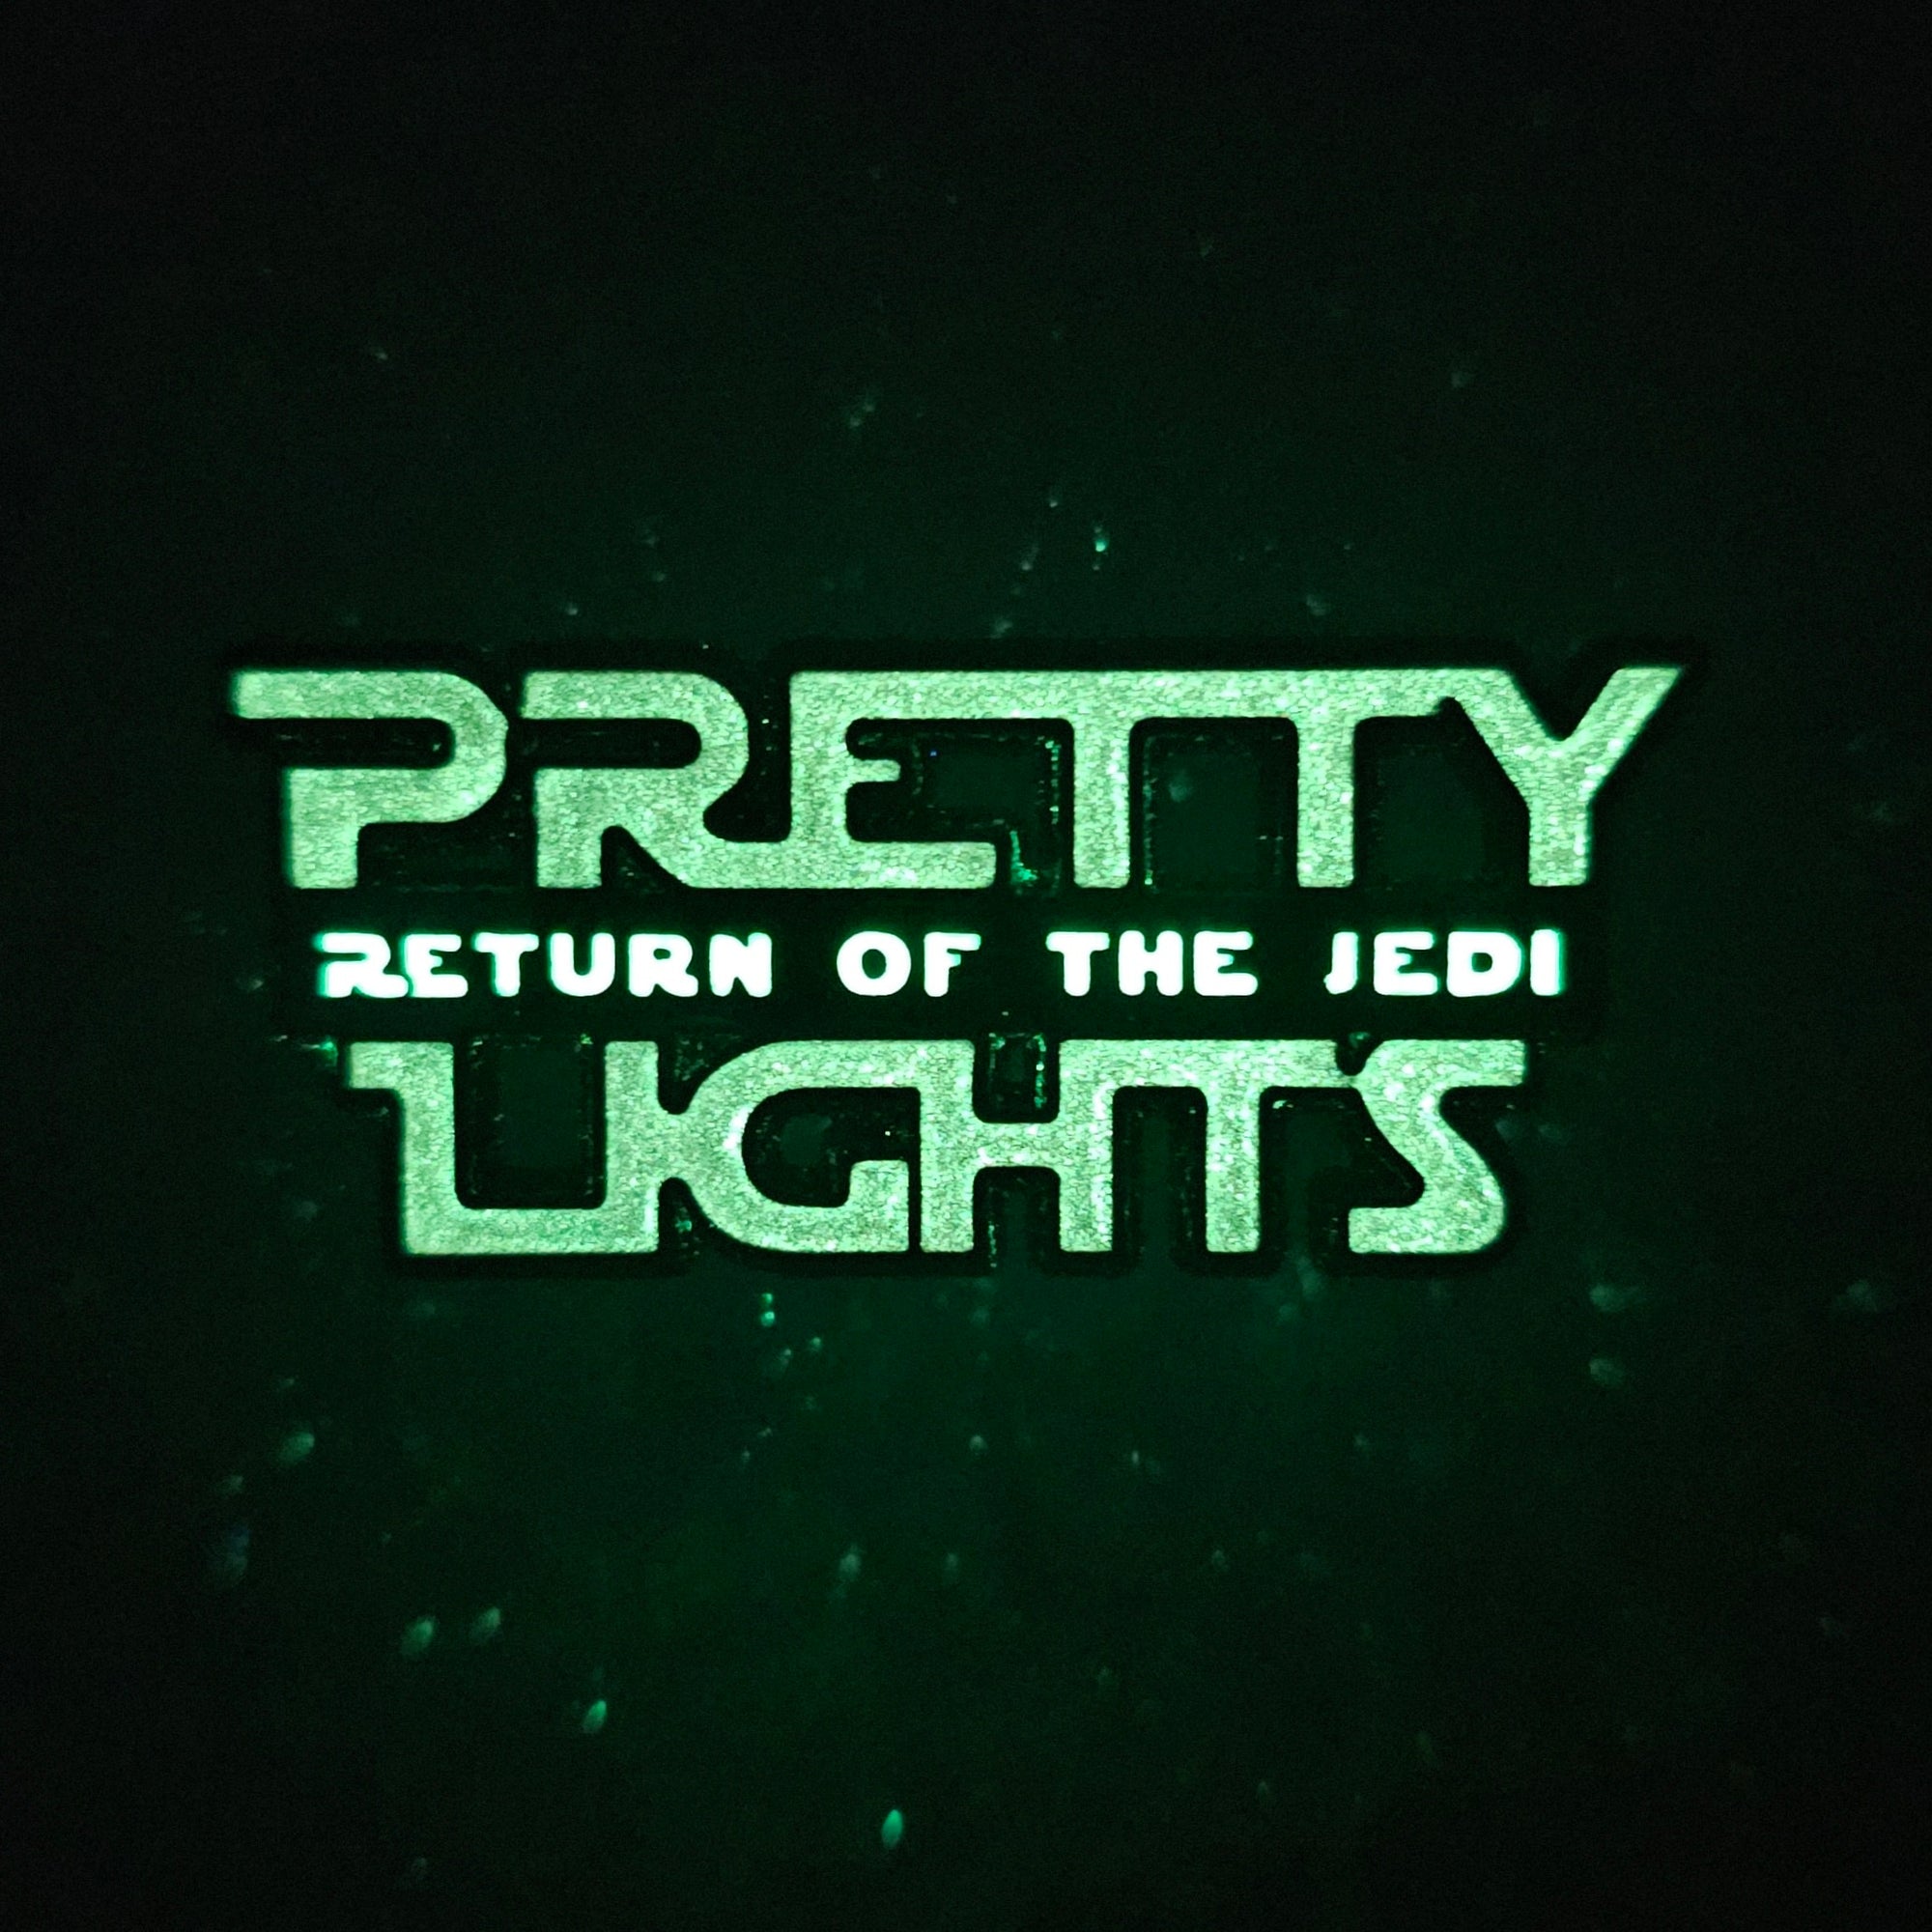 Return Of The Pretty Lights V1 Dj Jedi Star Edm Wars Glow Enamel Pins Hat Pins Lapel Pin Brooch Badge Festival Pin